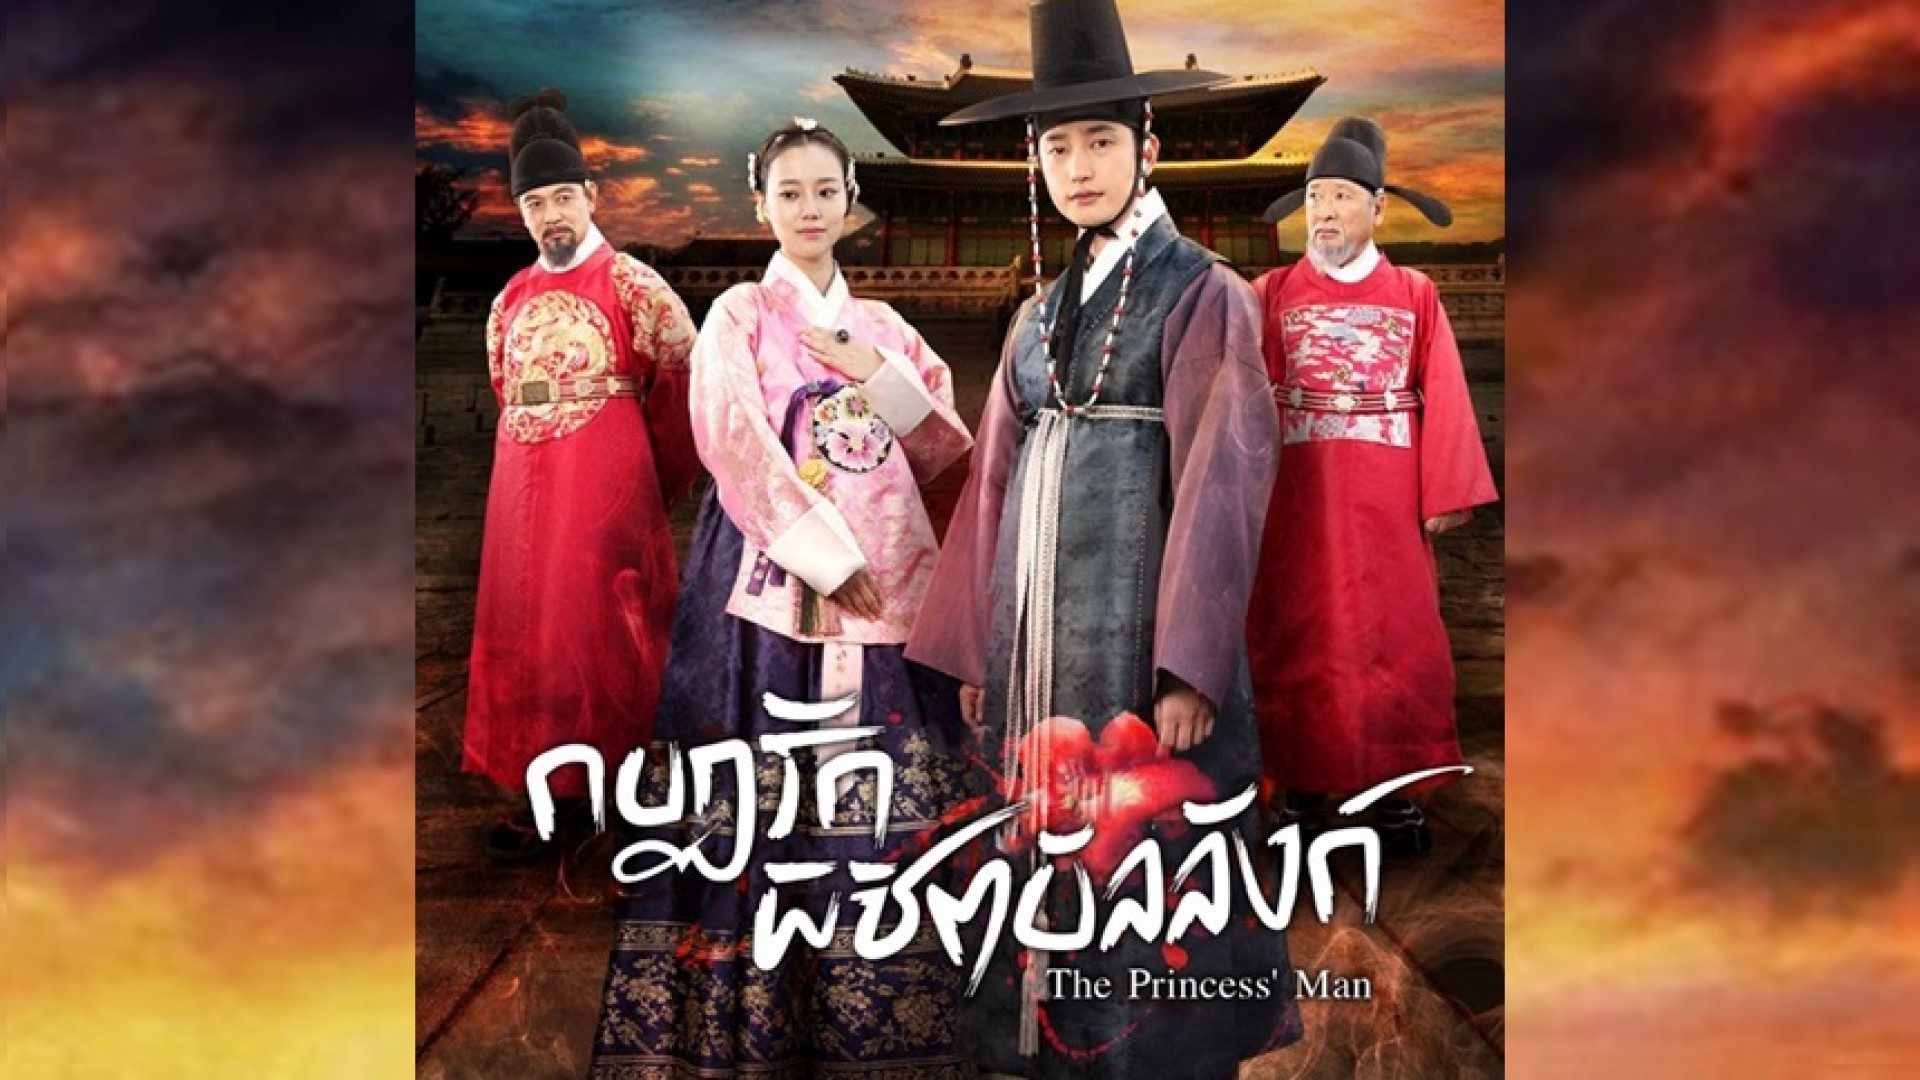 ช่อง 3 จับ ซีรีส์แดนกิมจิ “กบฏรัก พิชิตบัลลังก์ (The Princess' Man)” ตำนานความรักหวาน